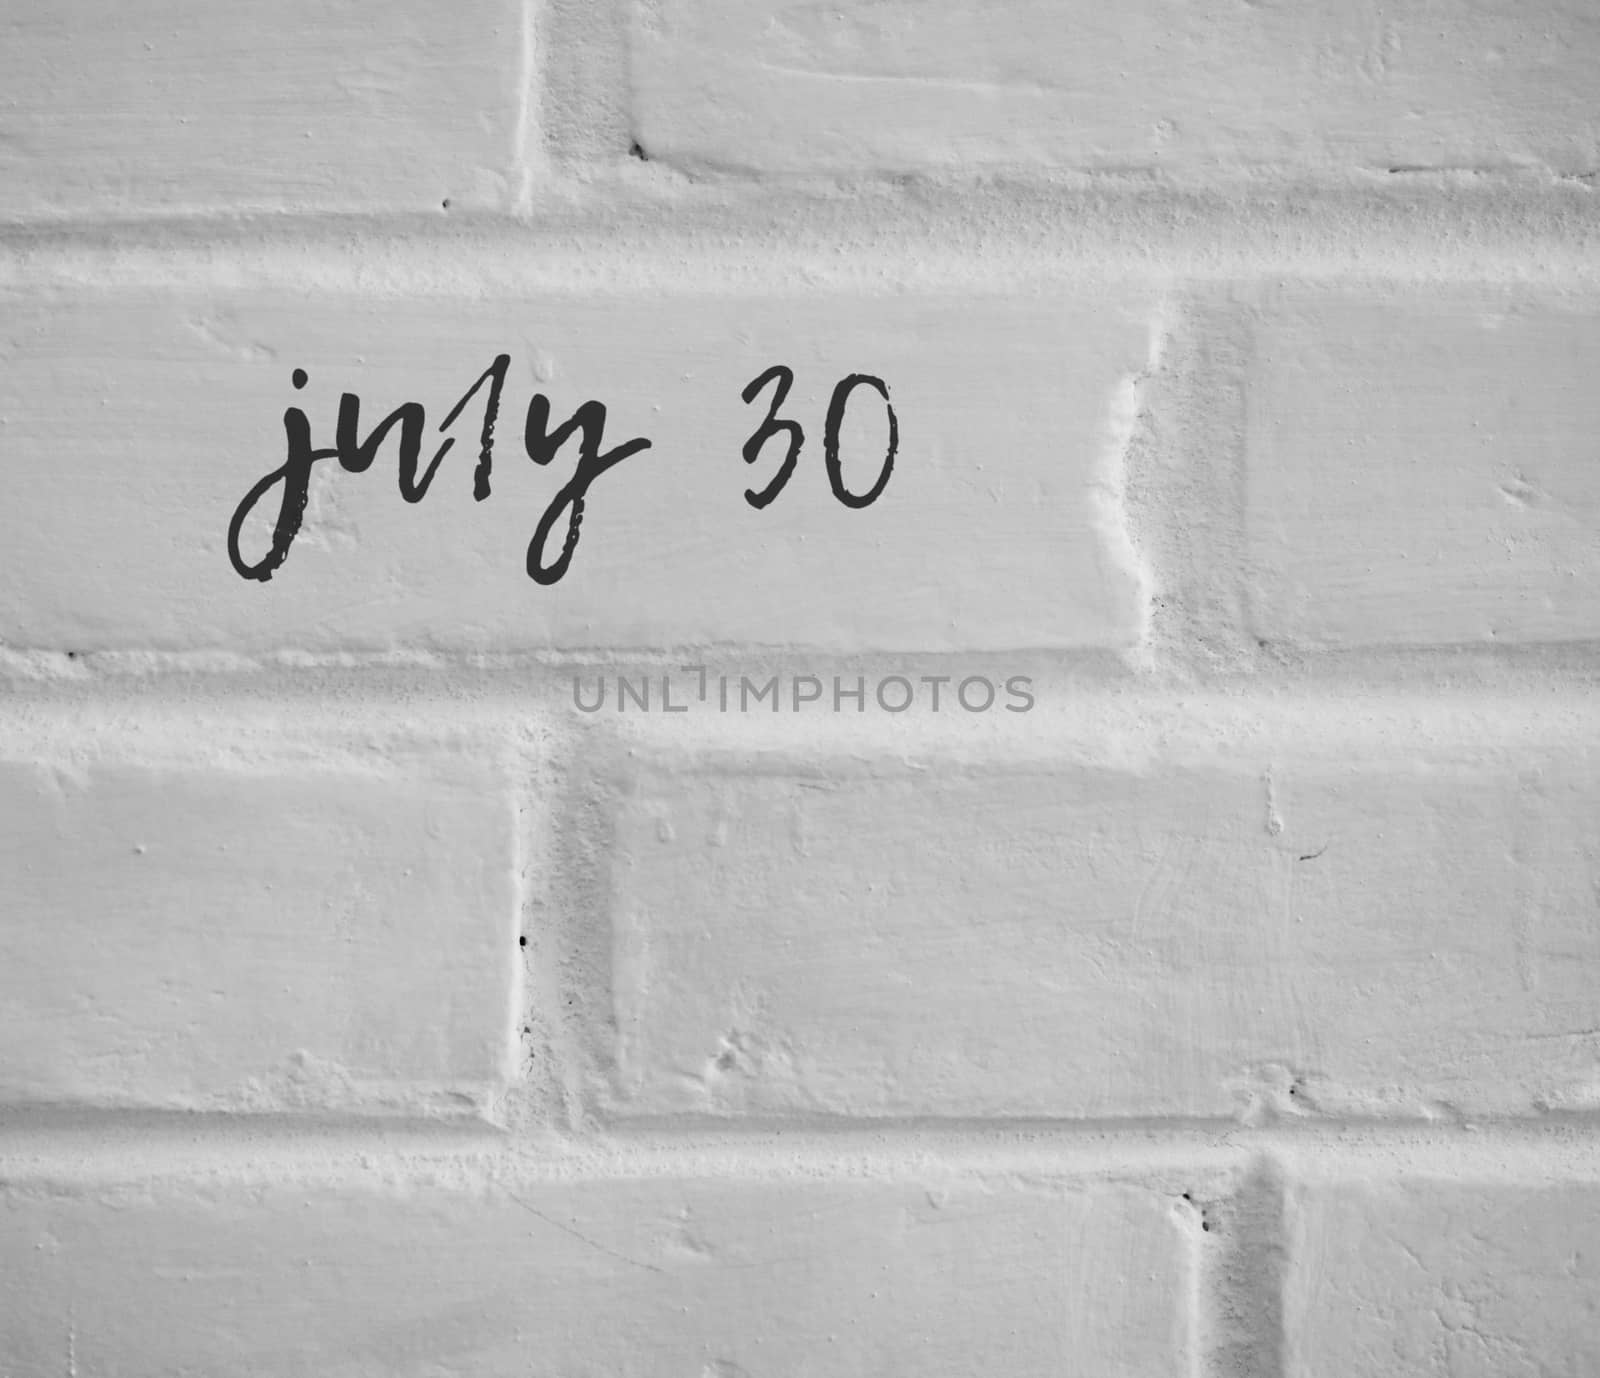 PHOTO OF july 30 WRITTEN ON WHITE PLAIN BRICK WALL